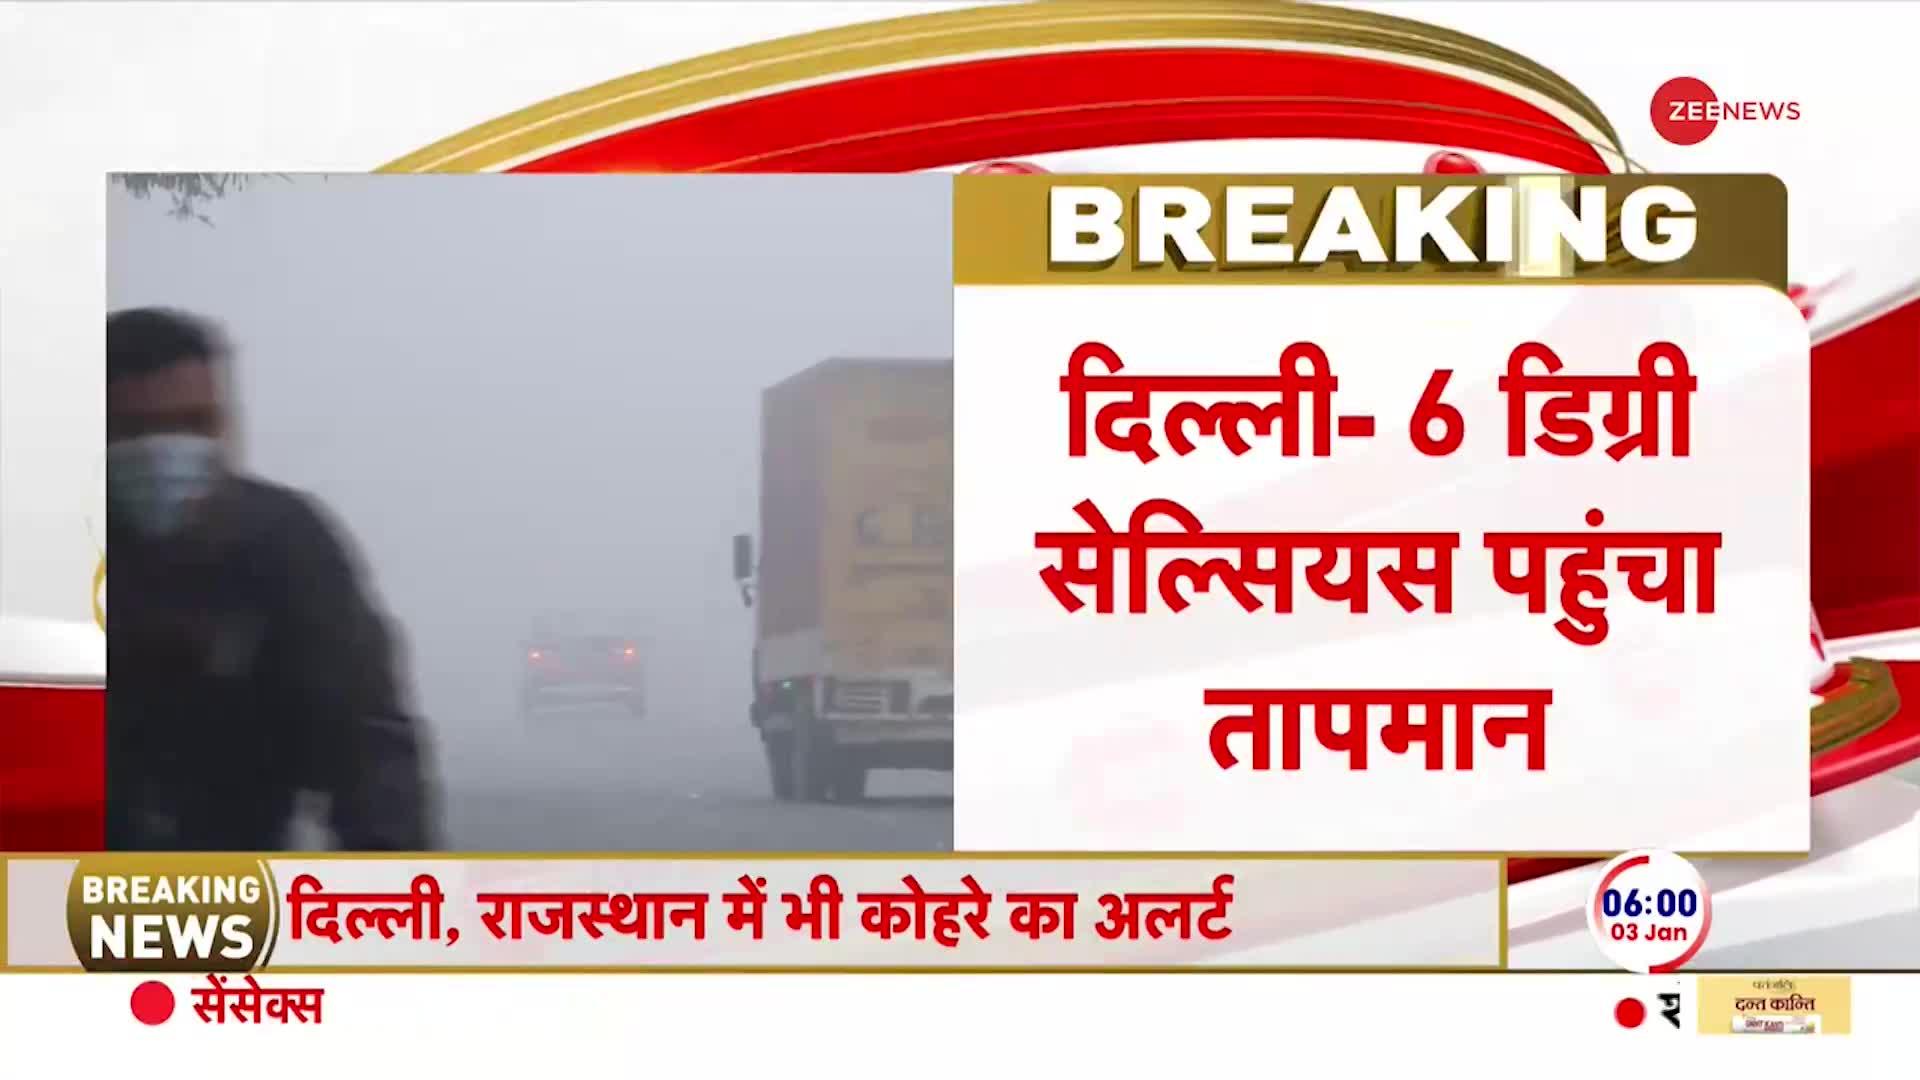 Weather Breaking: दिल्ली में तापमान 6 डिग्री सेल्सियस तक पहुंचा